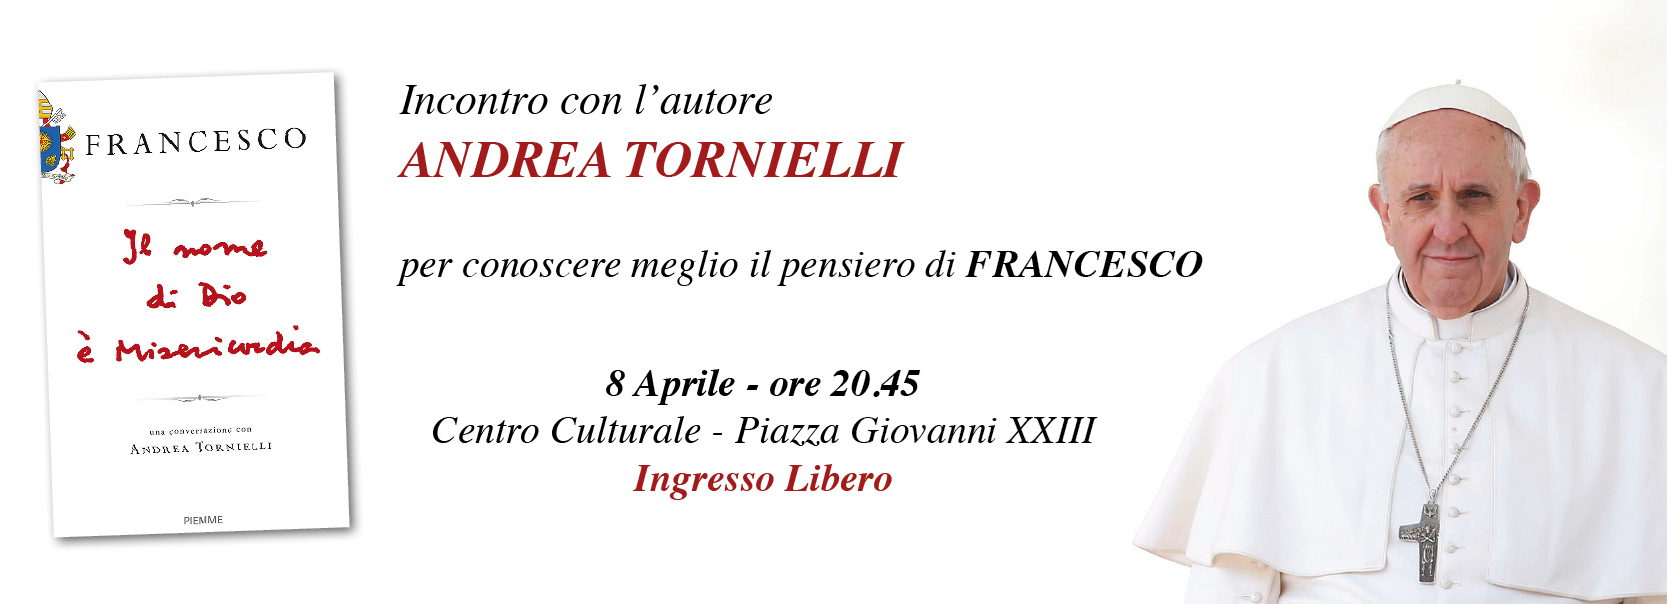 Incontro con l'autore Andrea Tornielli